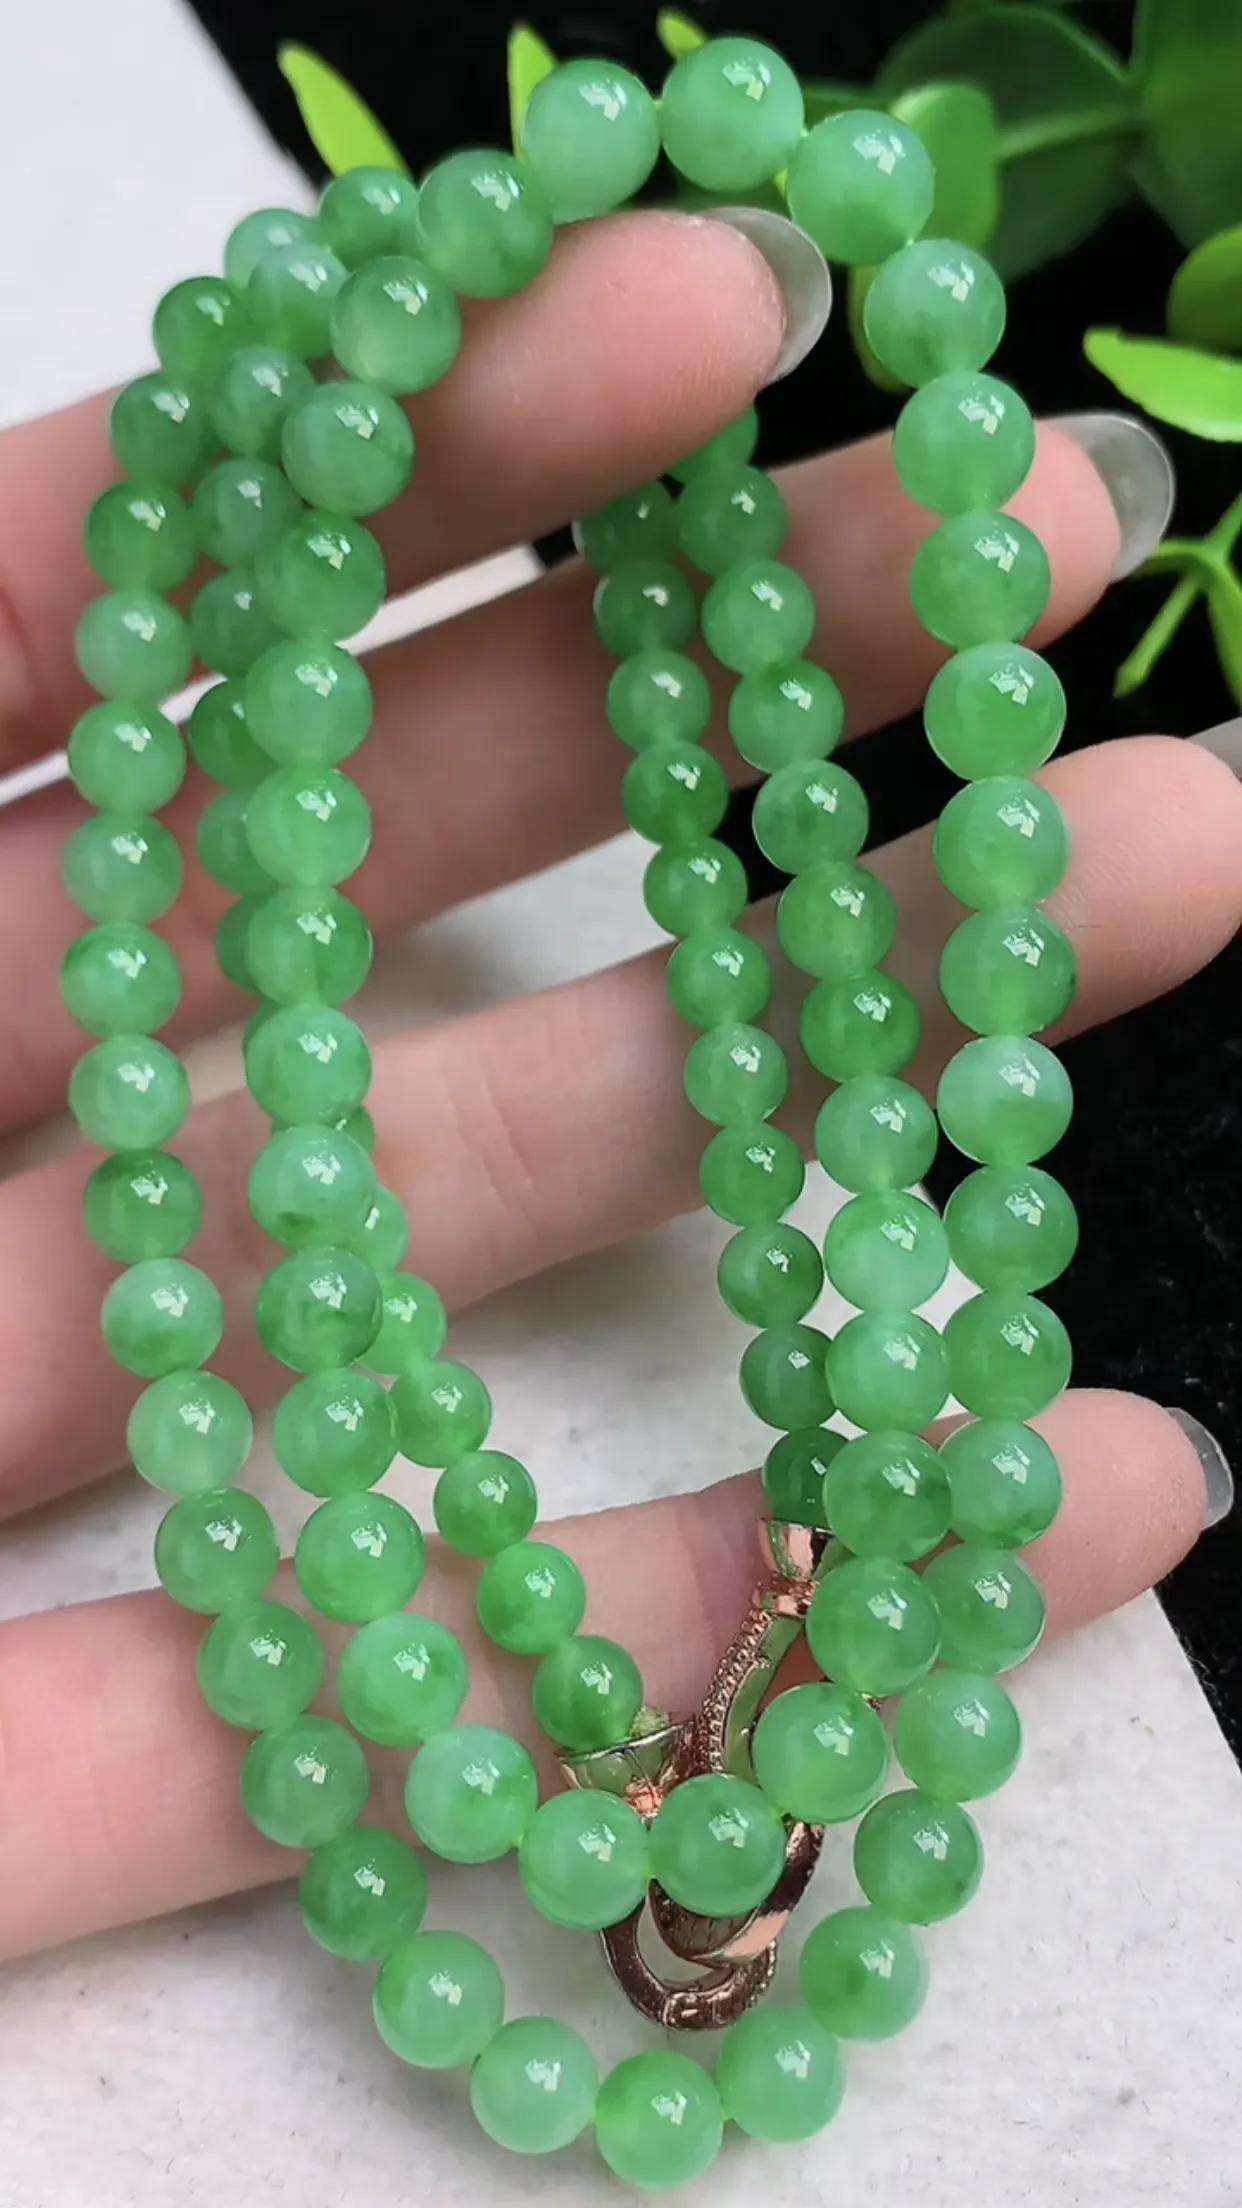 翡翠a货满阳绿圆珠项链100颗 尺寸 5.4mm